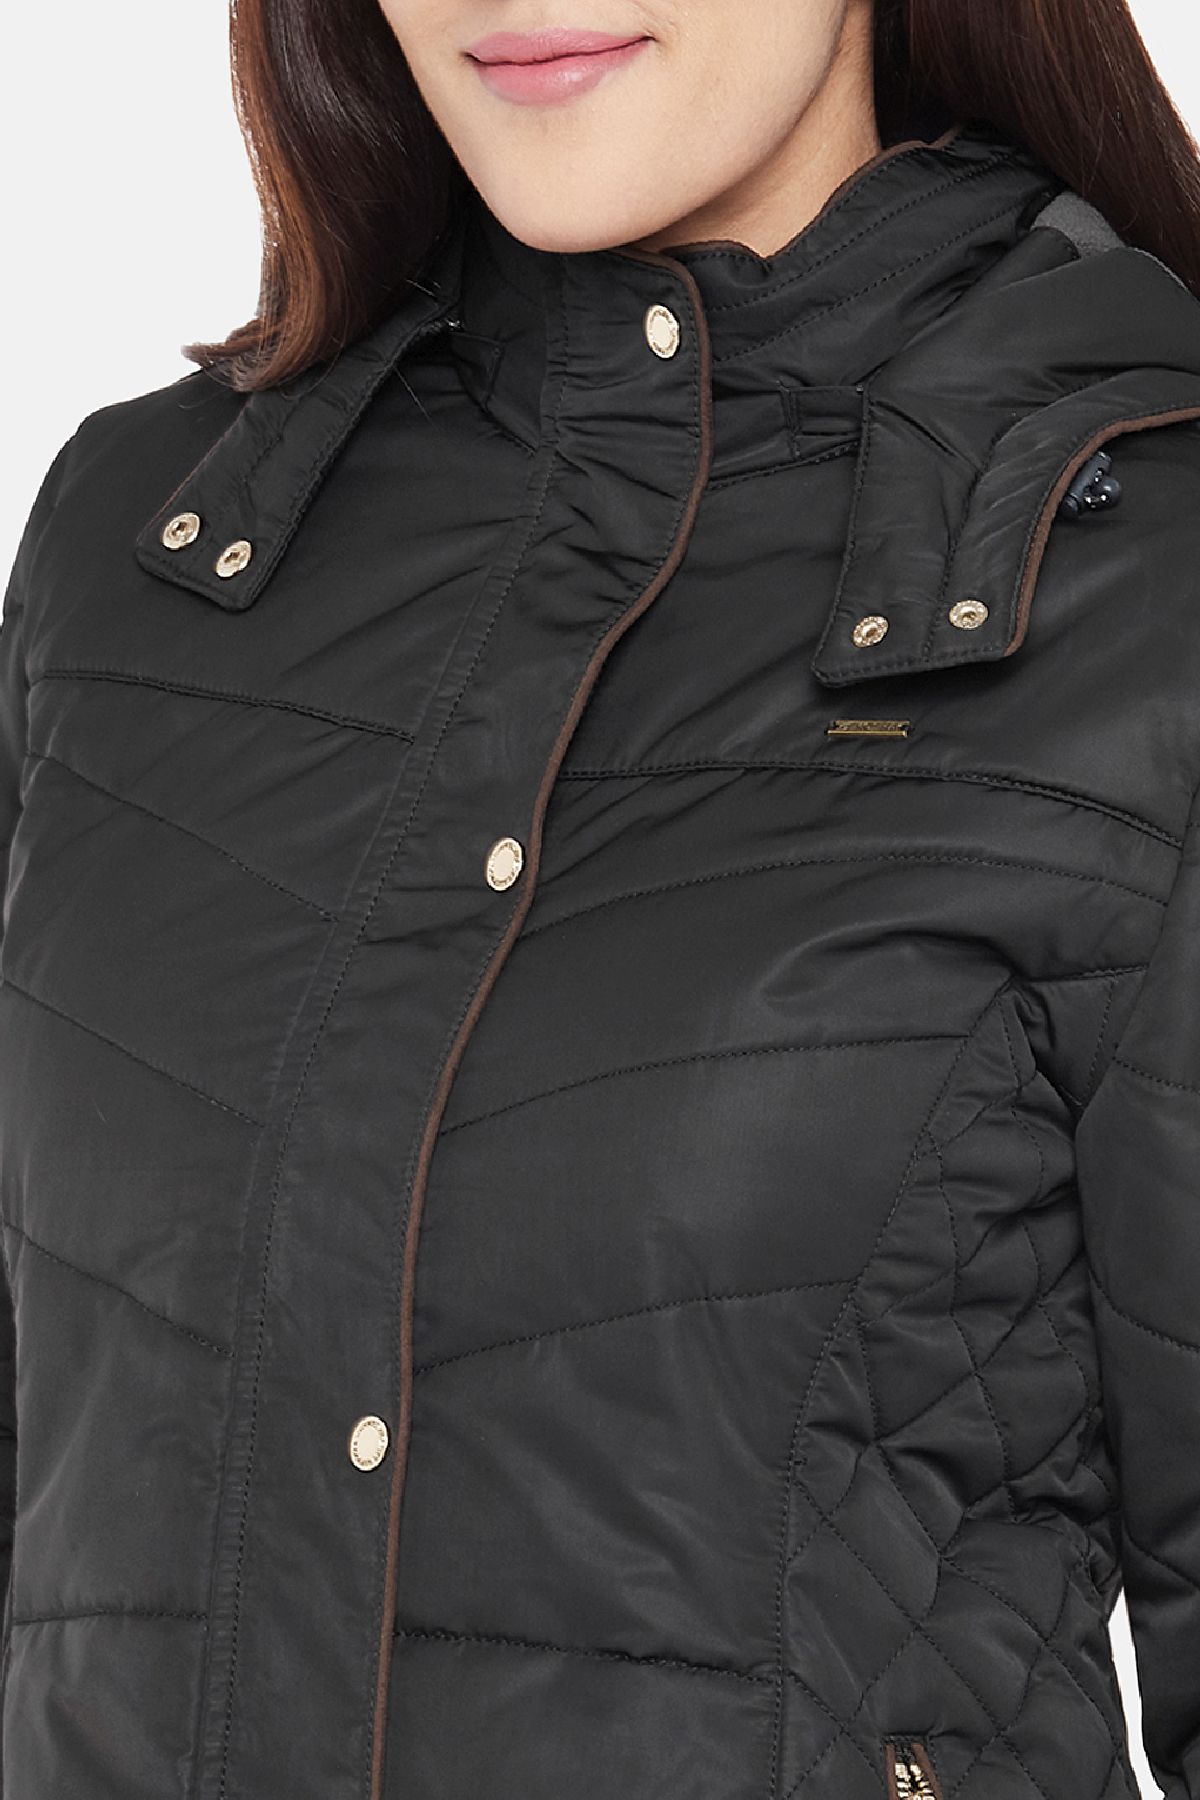 Black Fleece Lined Puffer Jacket | Women